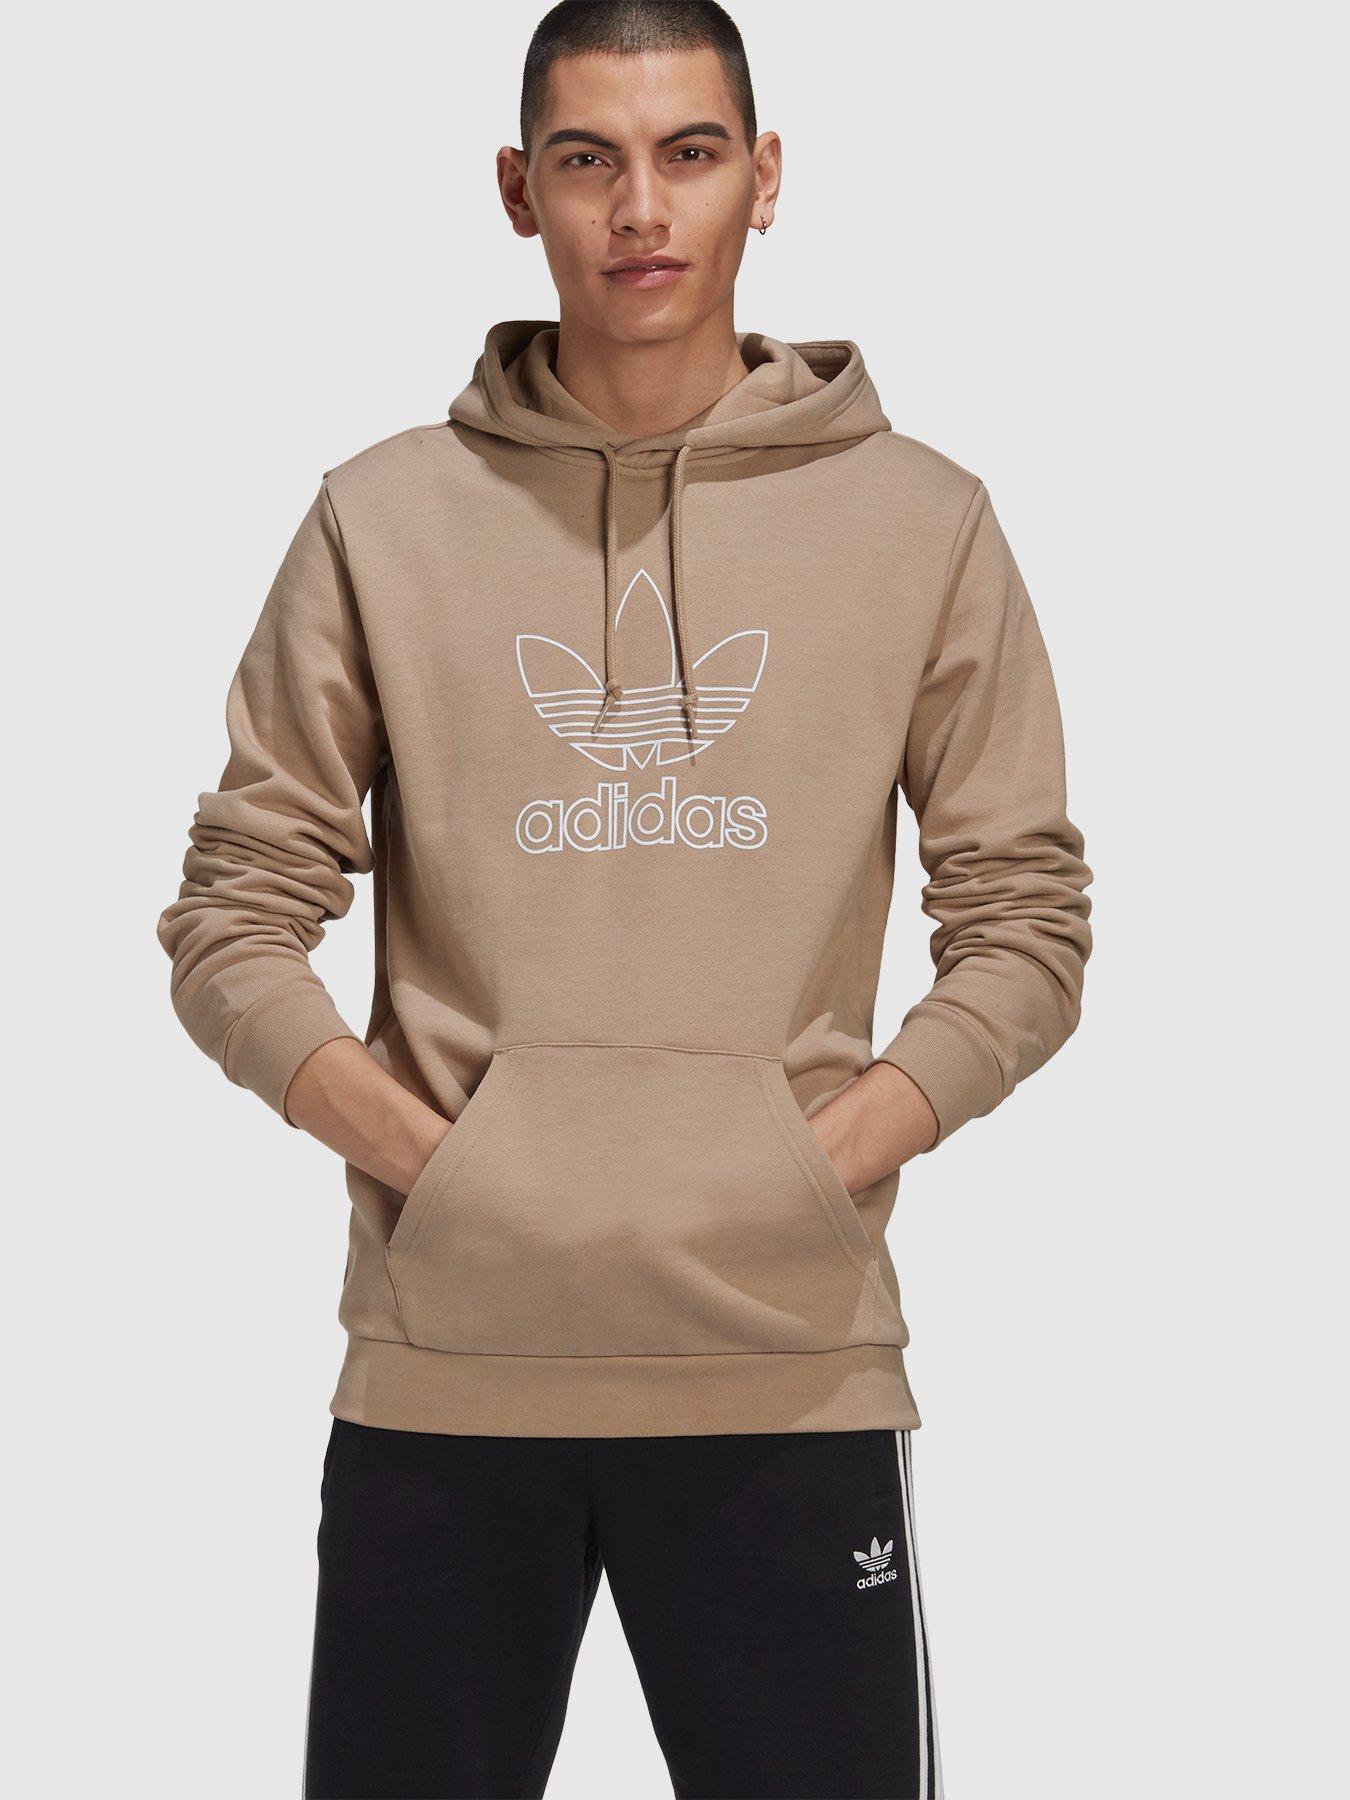 mens khaki adidas hoodie